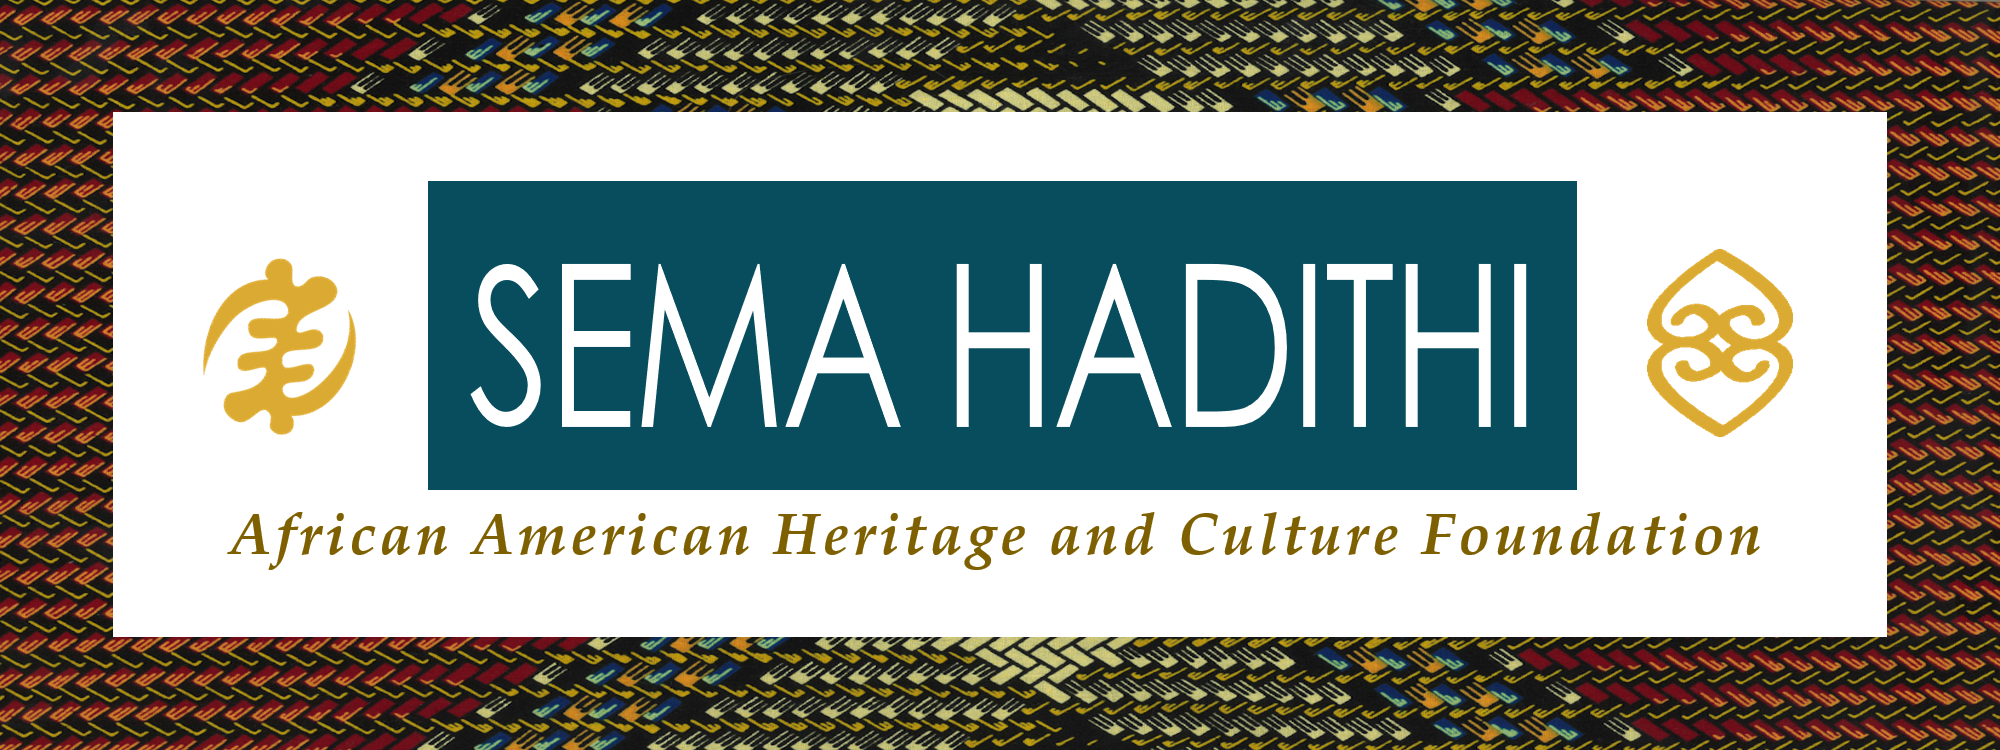 Sema Hadithi logo 2.png